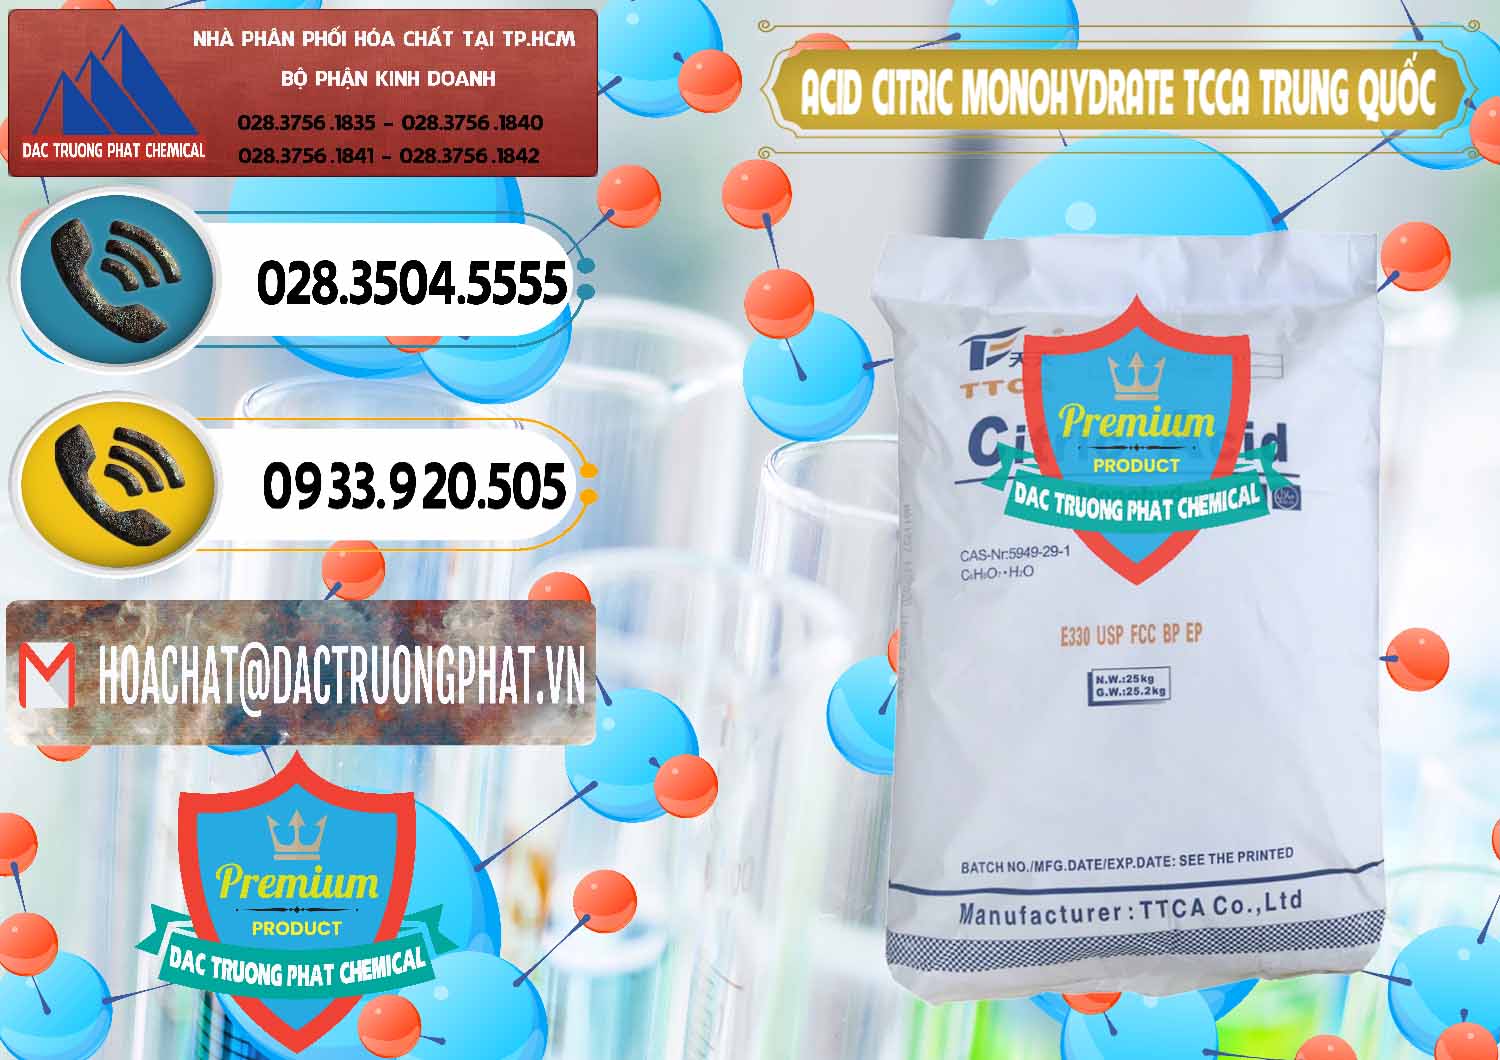 Cty chuyên bán - cung ứng Acid Citric - Axit Citric Monohydrate TCCA Trung Quốc China - 0441 - Chuyên cung cấp - kinh doanh hóa chất tại TP.HCM - hoachatdetnhuom.vn